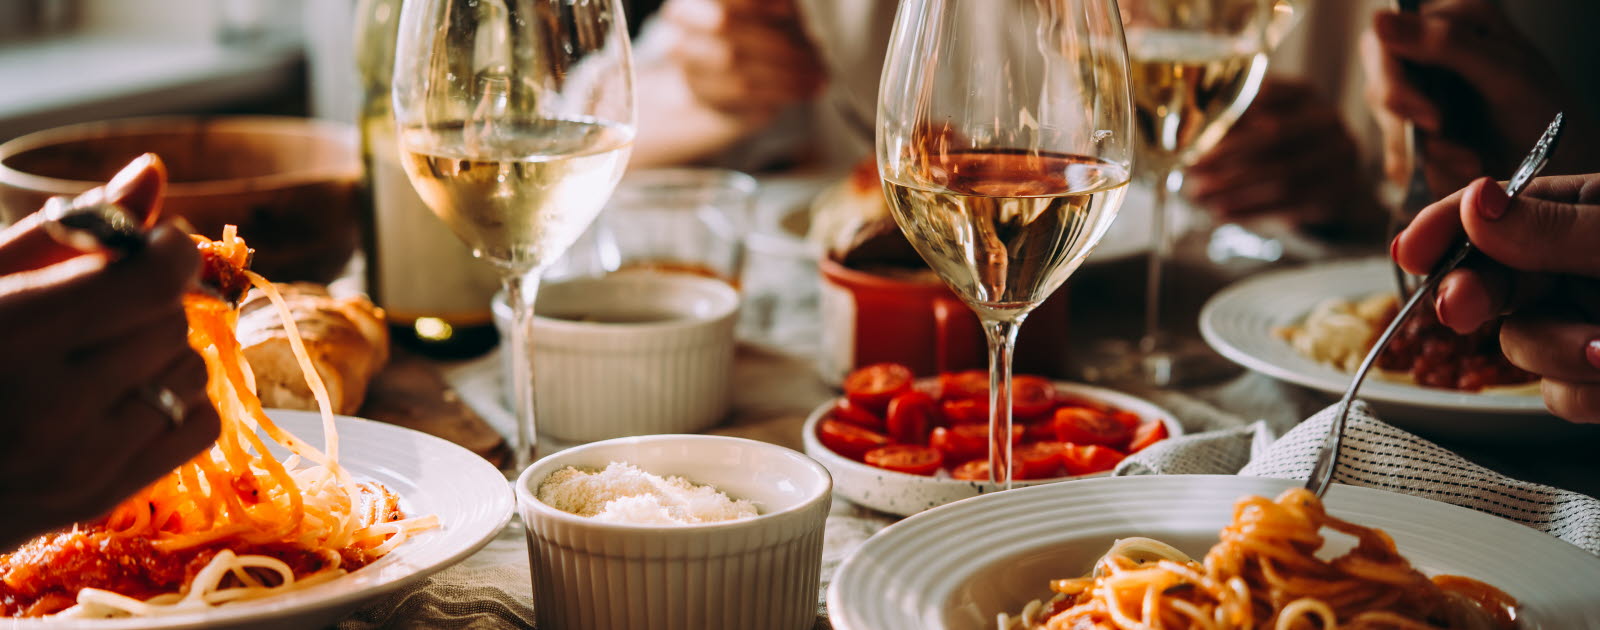 Tallrikar med pastarätter och glas med vitt vin på ett bord.